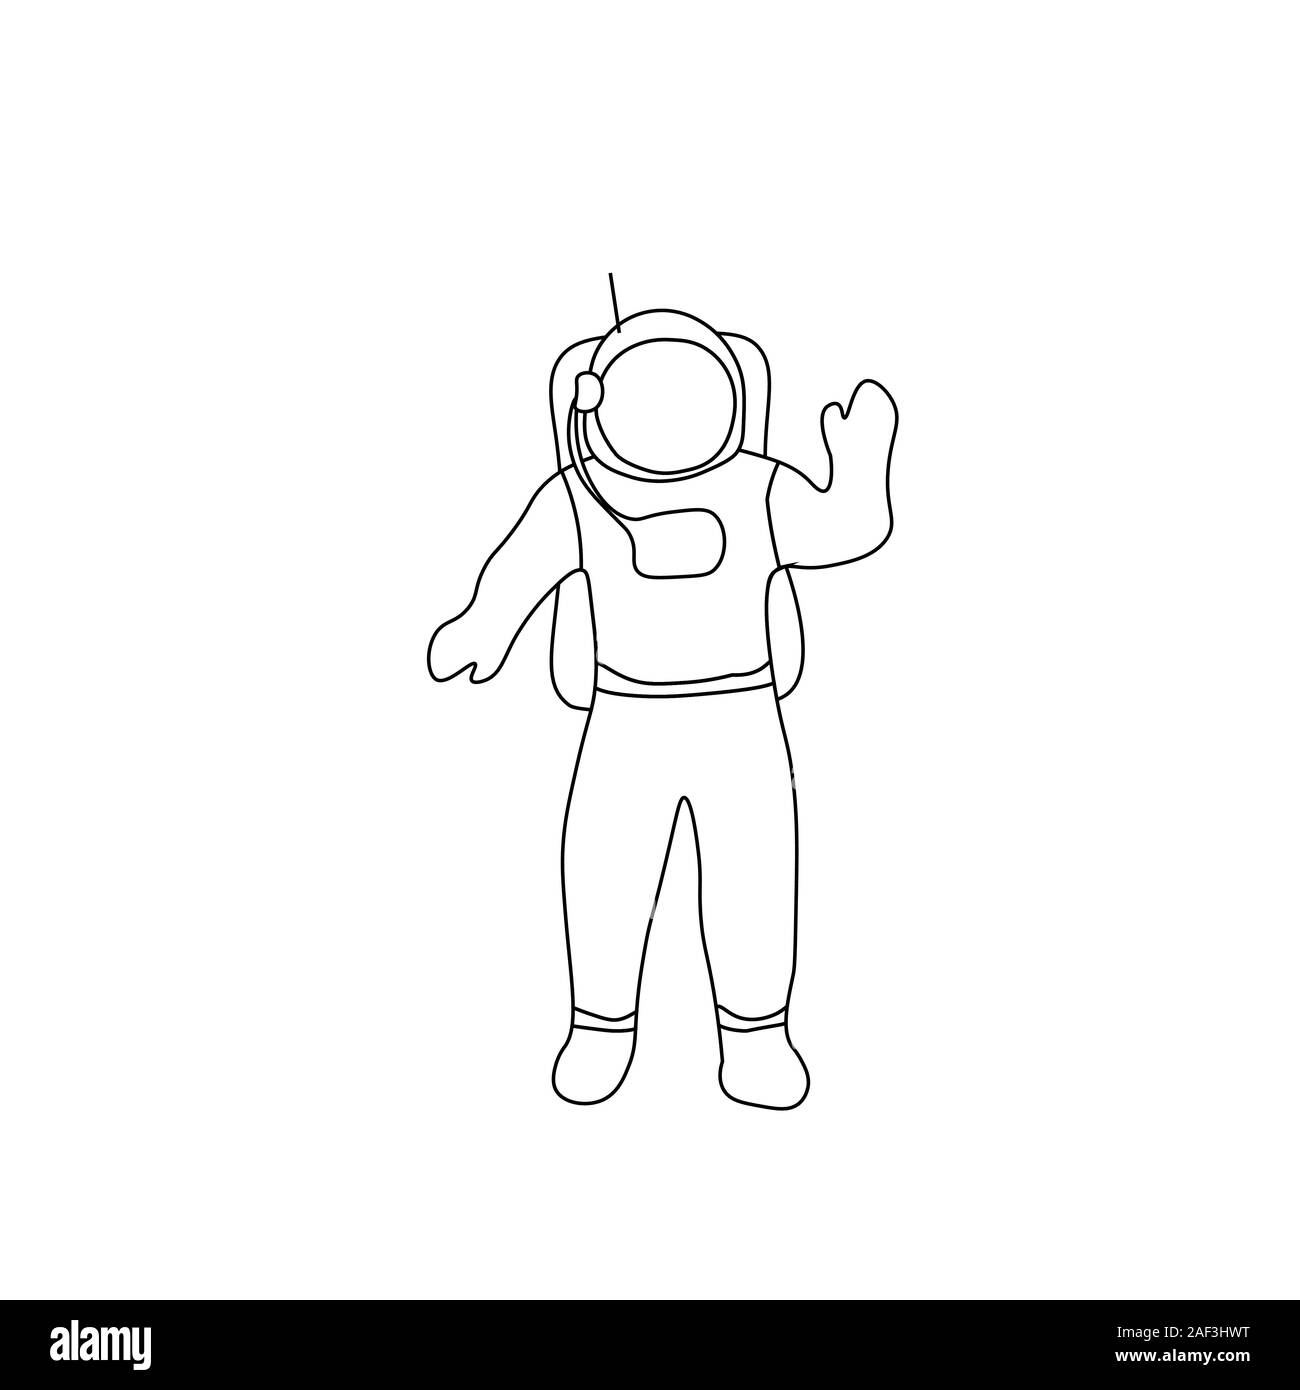 L'astronaute cosmonaute dire bonjour. Contour noir sur fond blanc. Photo peut être utilisé dans les cartes de vœux, affiches, flyers, bannières, logo, conception d'illustration vectorielle, etc.. EPS10 Illustration de Vecteur